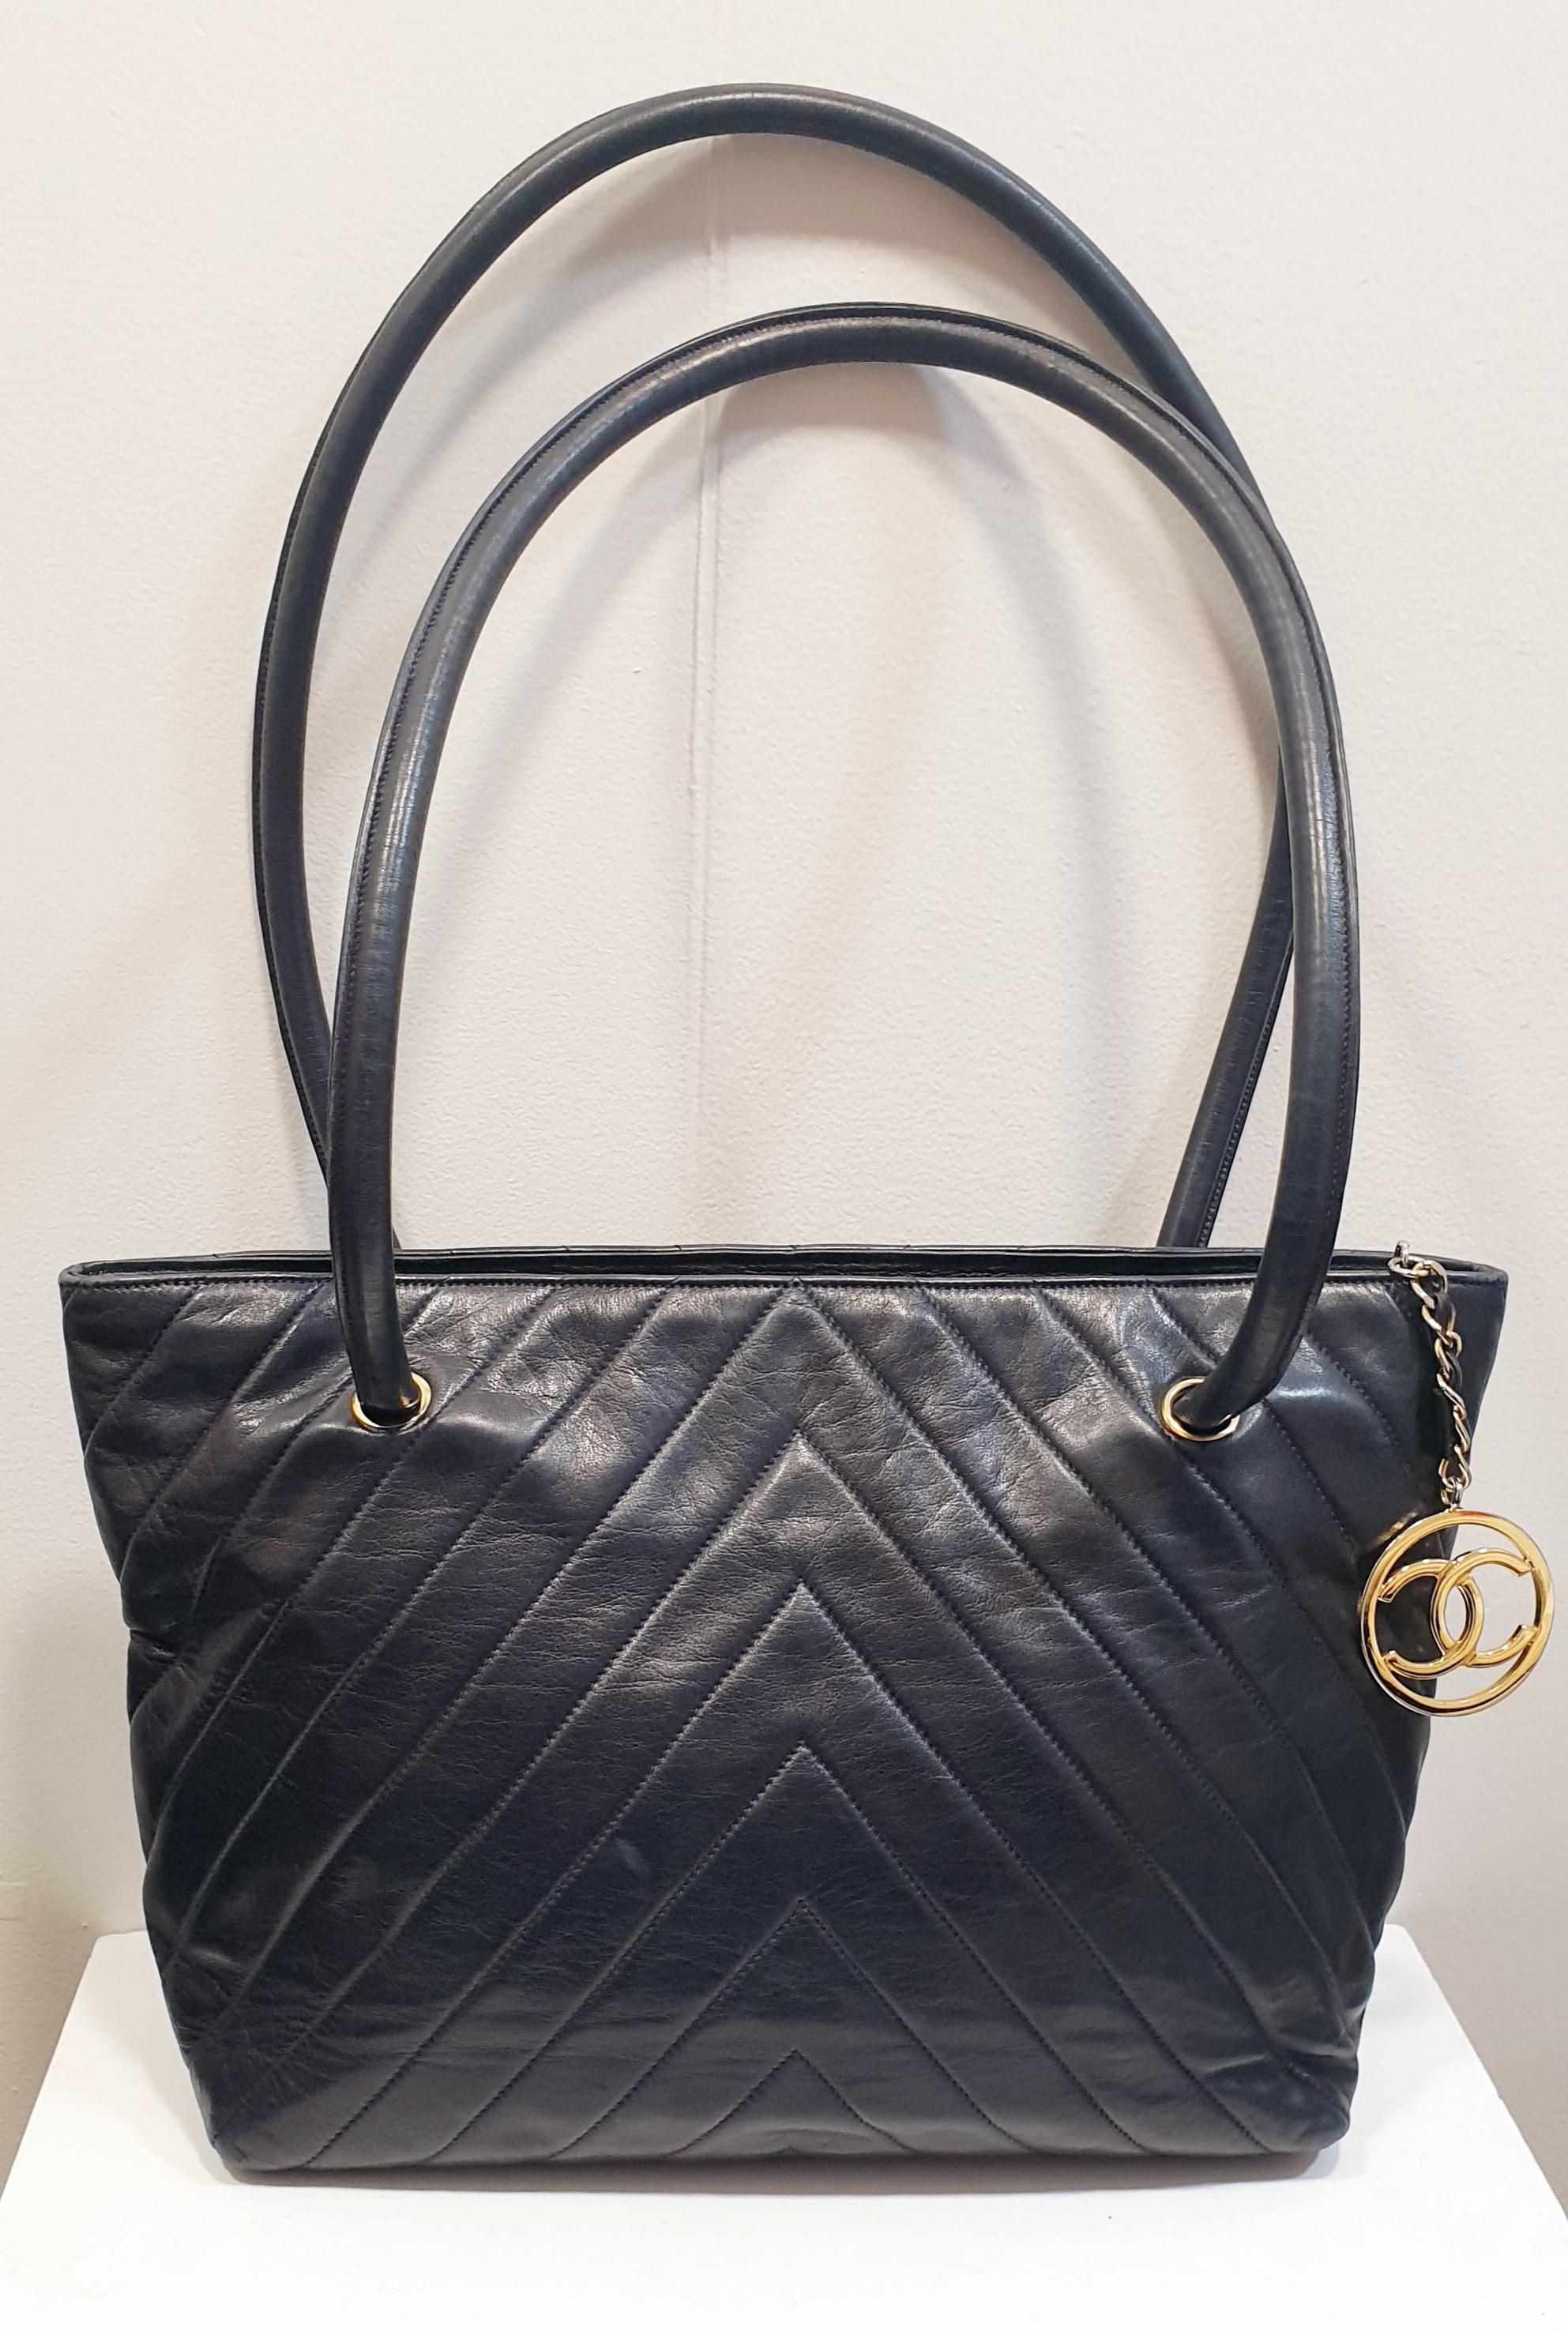 Chanel Dark Blue Leather Chevron Tote Bag                                                                                                                                                                                                                